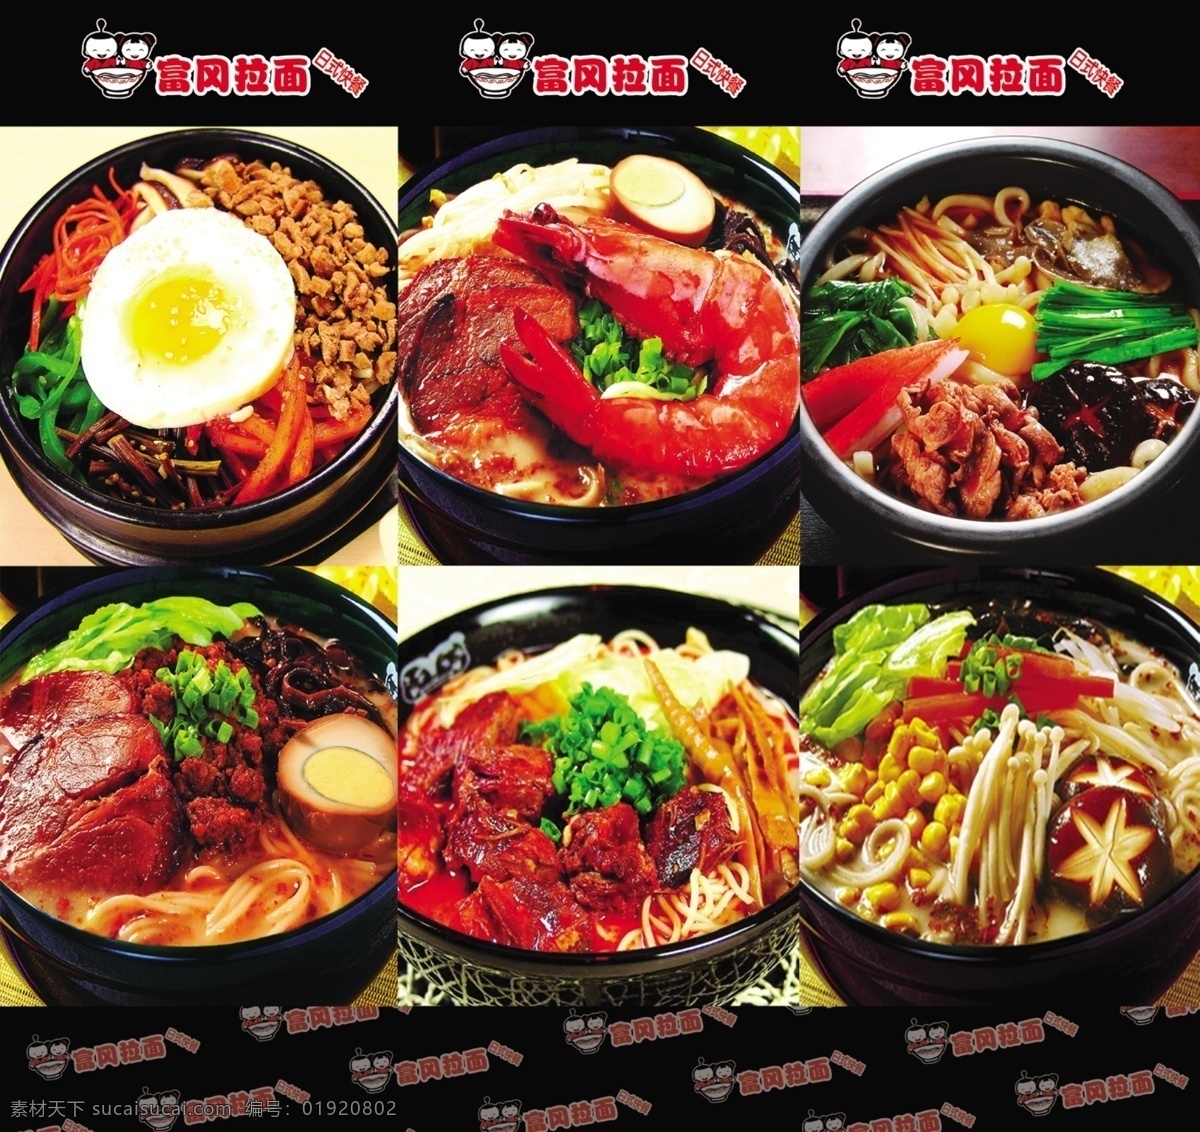 餐饮店 菜品 宣传 高清 餐饮素材 拉面图片 砂锅 福冈 拉面 logo 特色菜品